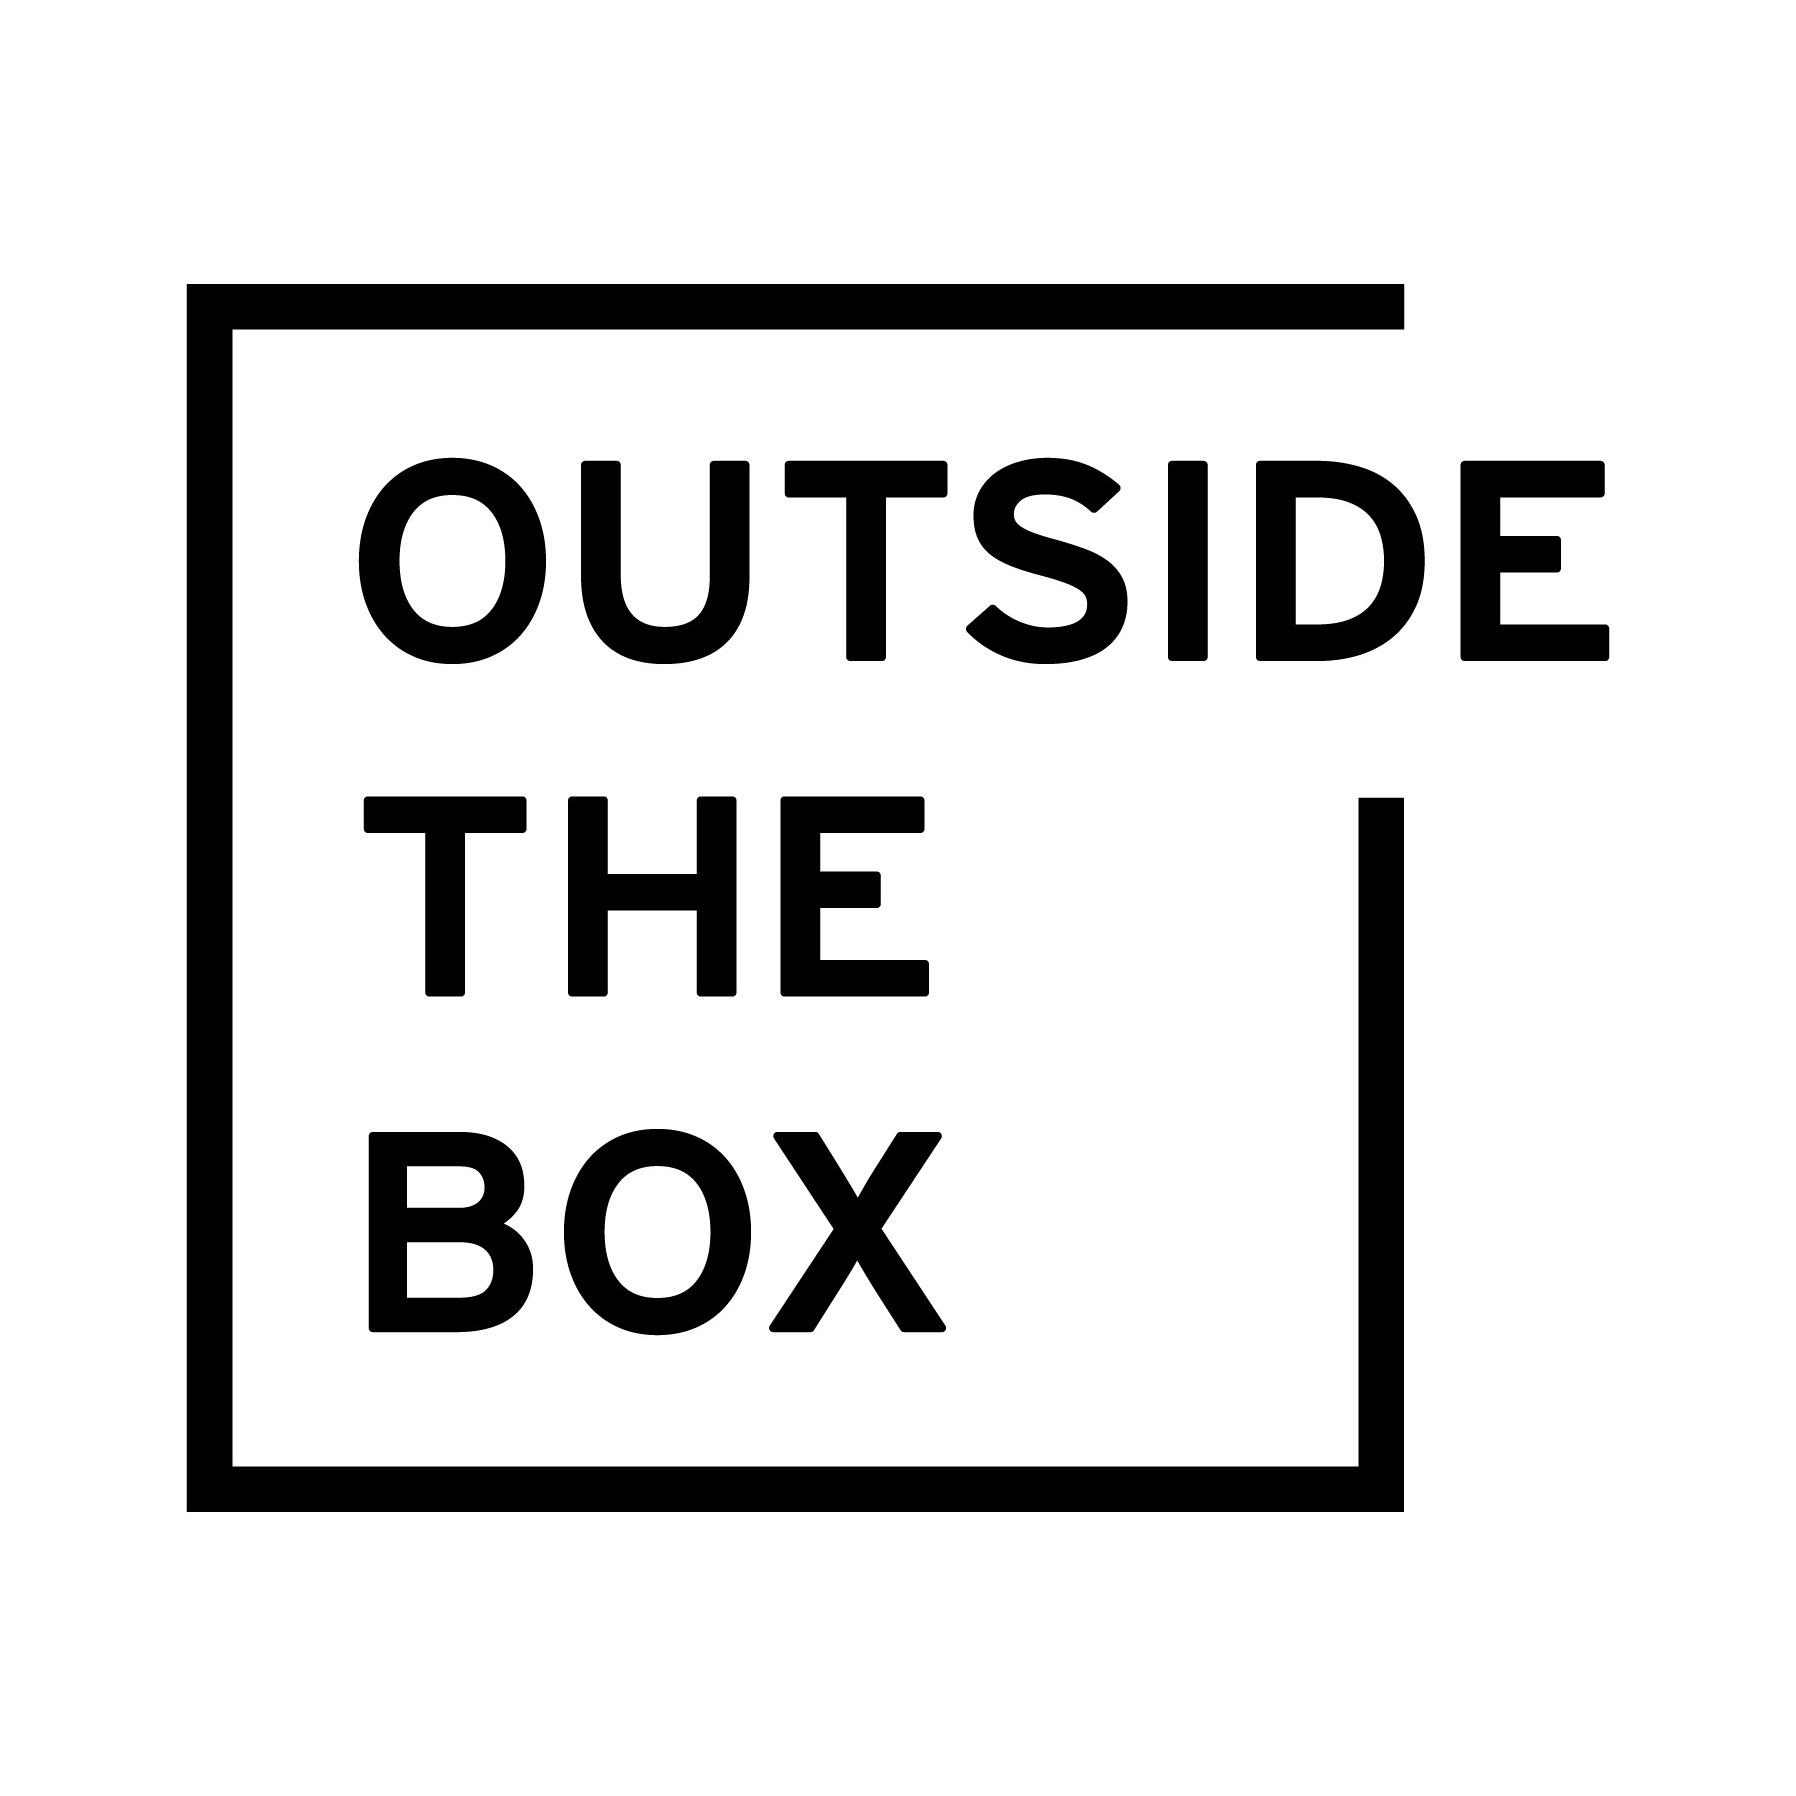 OUTSIDE THE BOX ららぽーと福岡 Logo